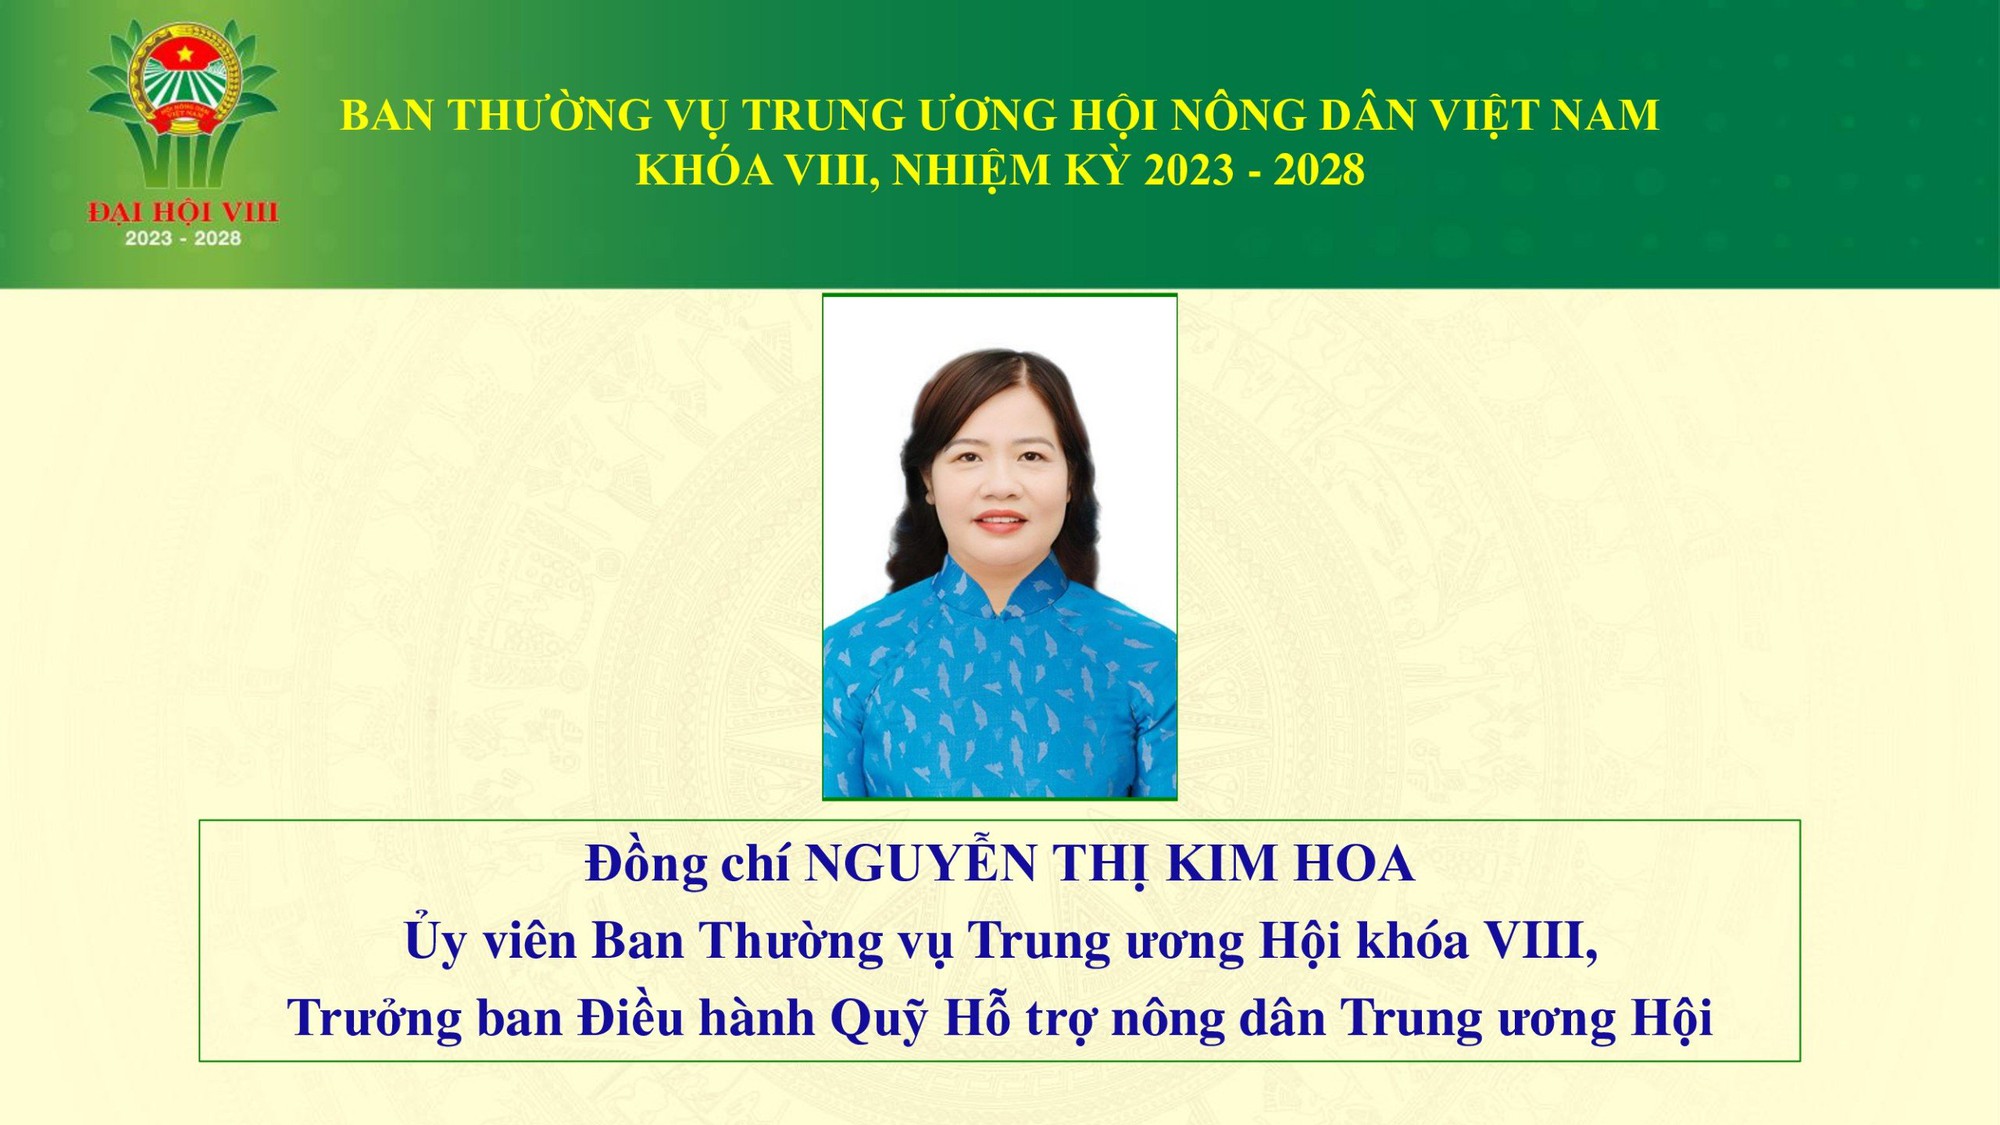 Danh sách 18 đồng chí tham gia Ban Thường vụ Trung ương Hội Nông dân Việt Nam khoá VIII - Ảnh 10.